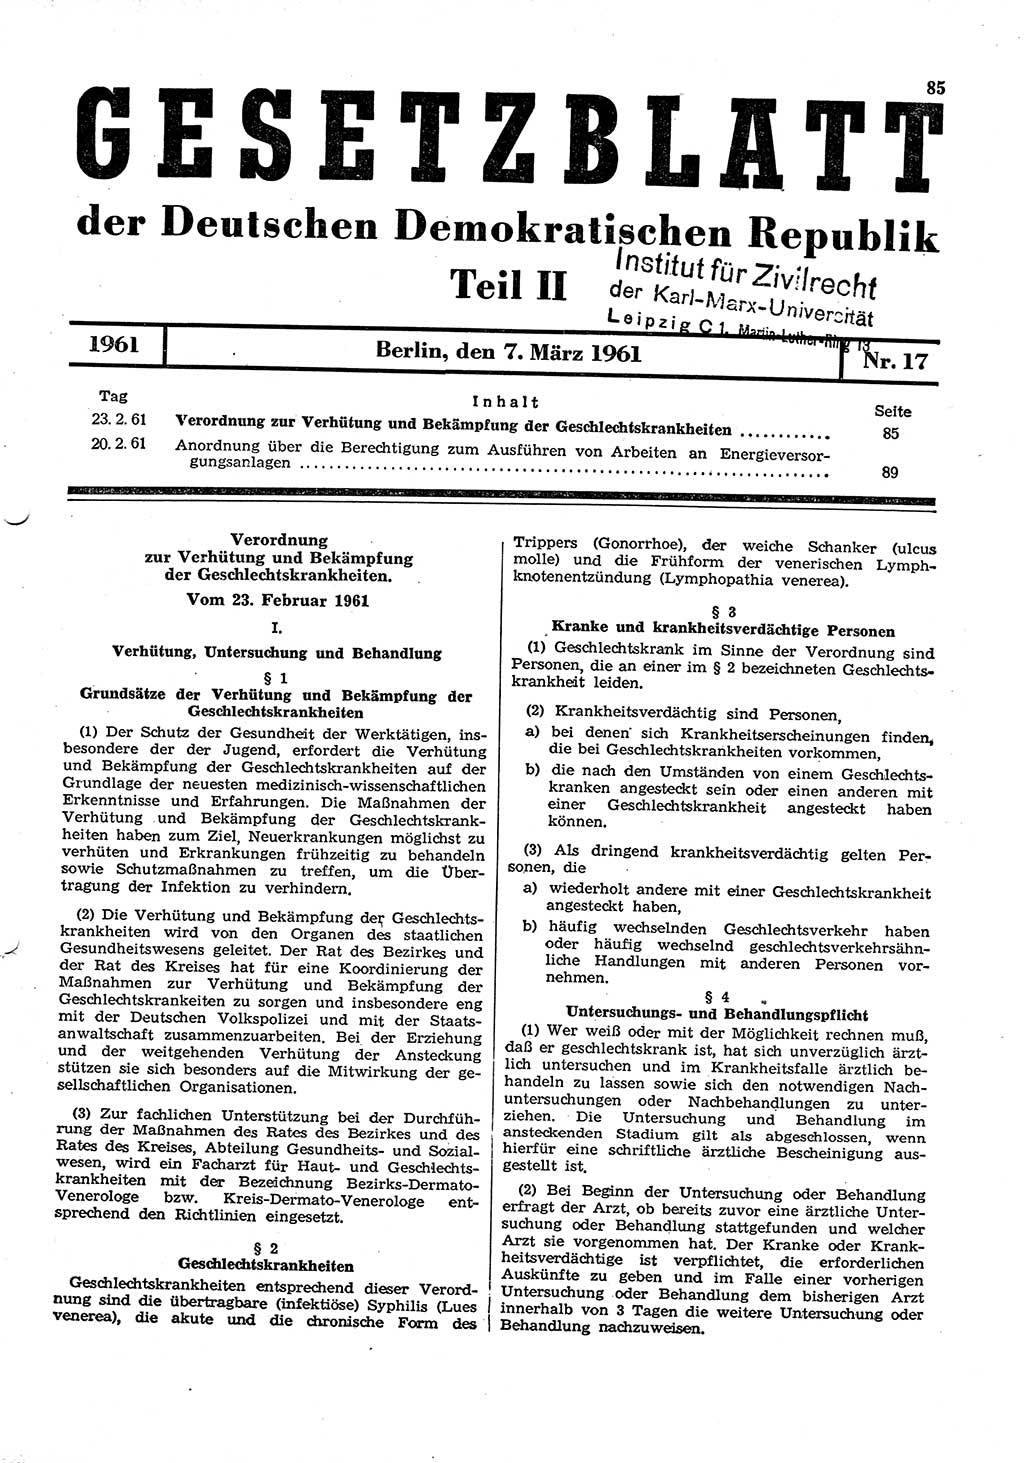 Gesetzblatt (GBl.) der Deutschen Demokratischen Republik (DDR) Teil ⅠⅠ 1961, Seite 85 (GBl. DDR ⅠⅠ 1961, S. 85)